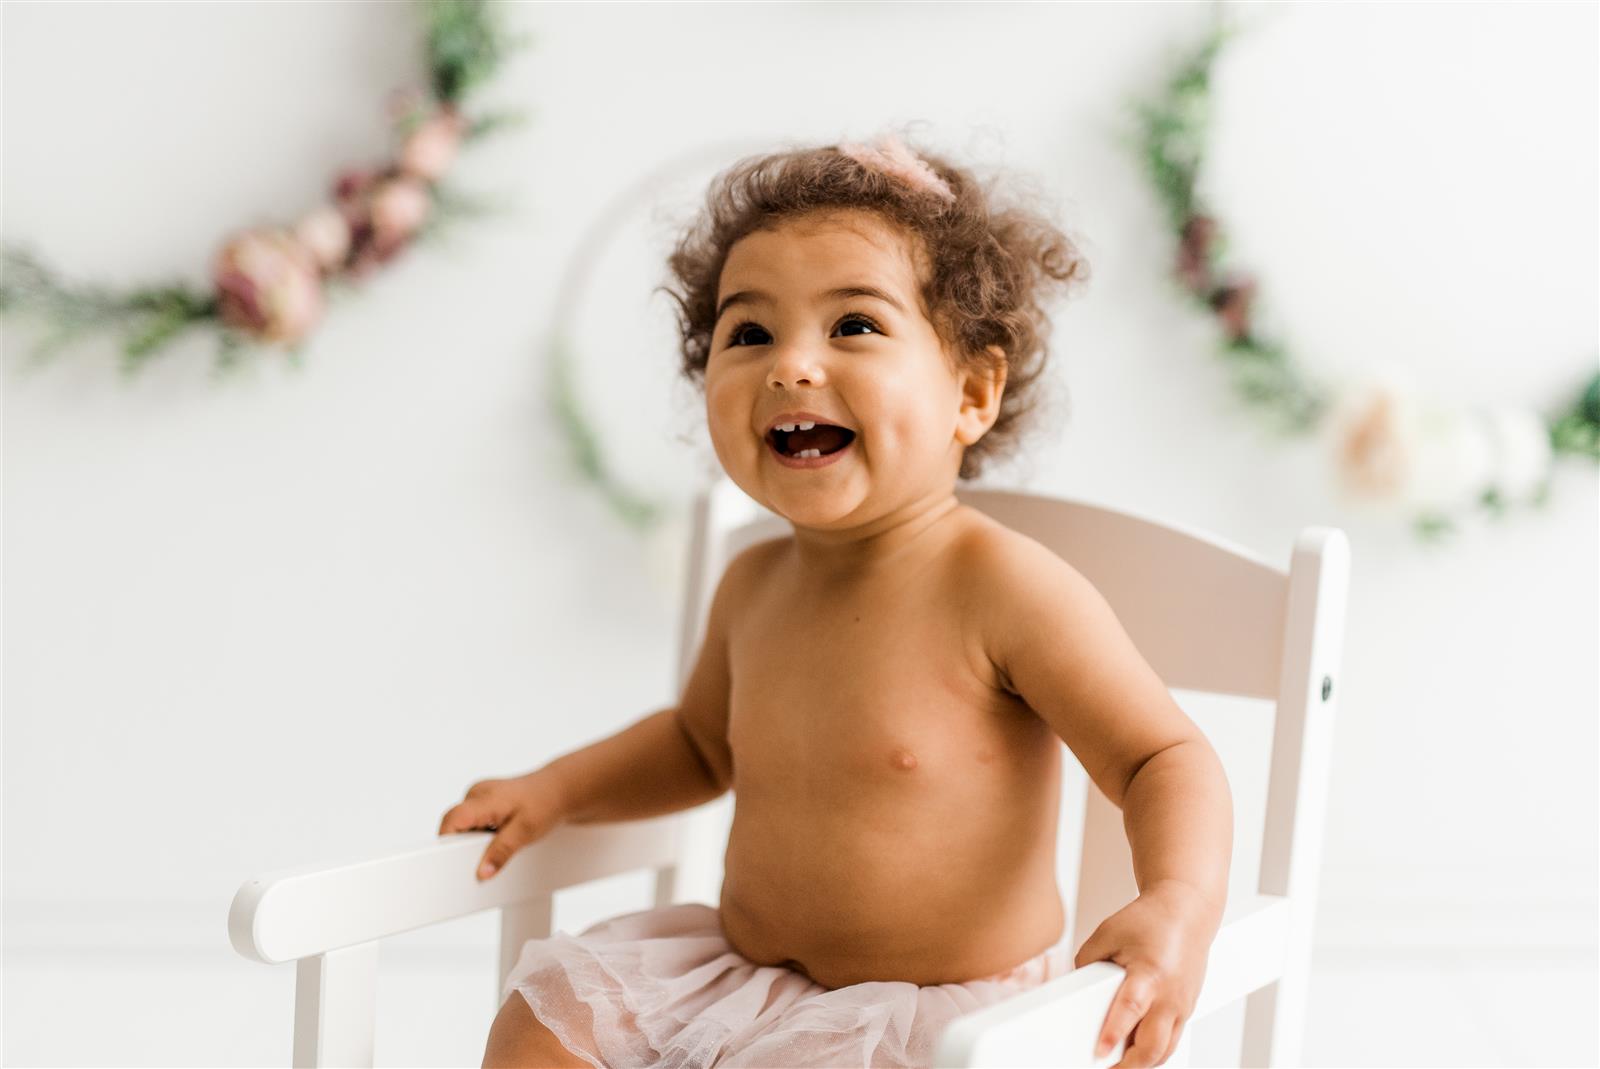 Fotografiranje za rojstni dan | Neža Reisner fotografija - družinsko fotografiranje, fotografiranje otrok, fotografiranje dojenčkov 1